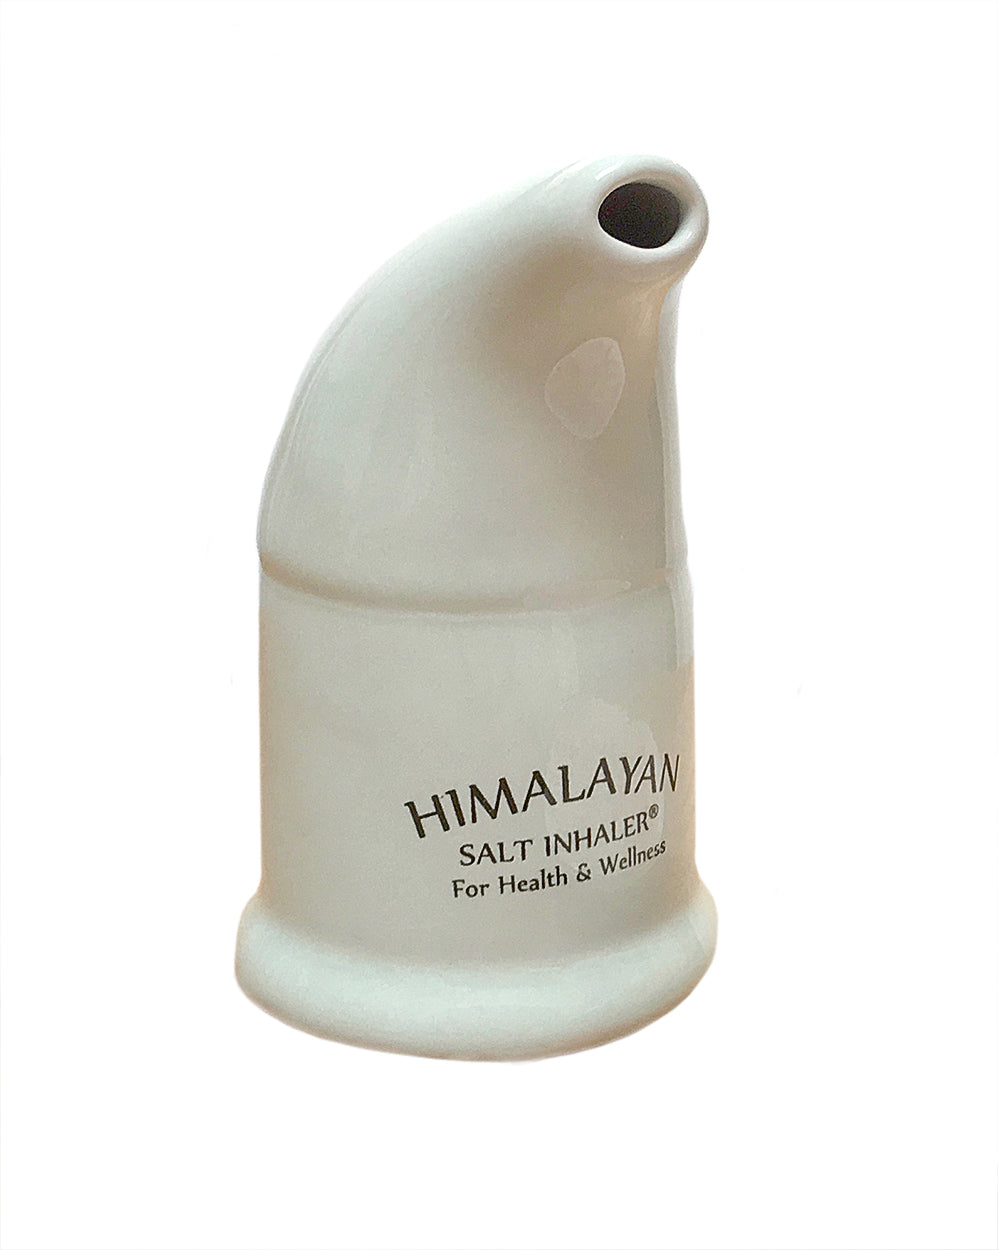 An image of a beige salt inhaler 